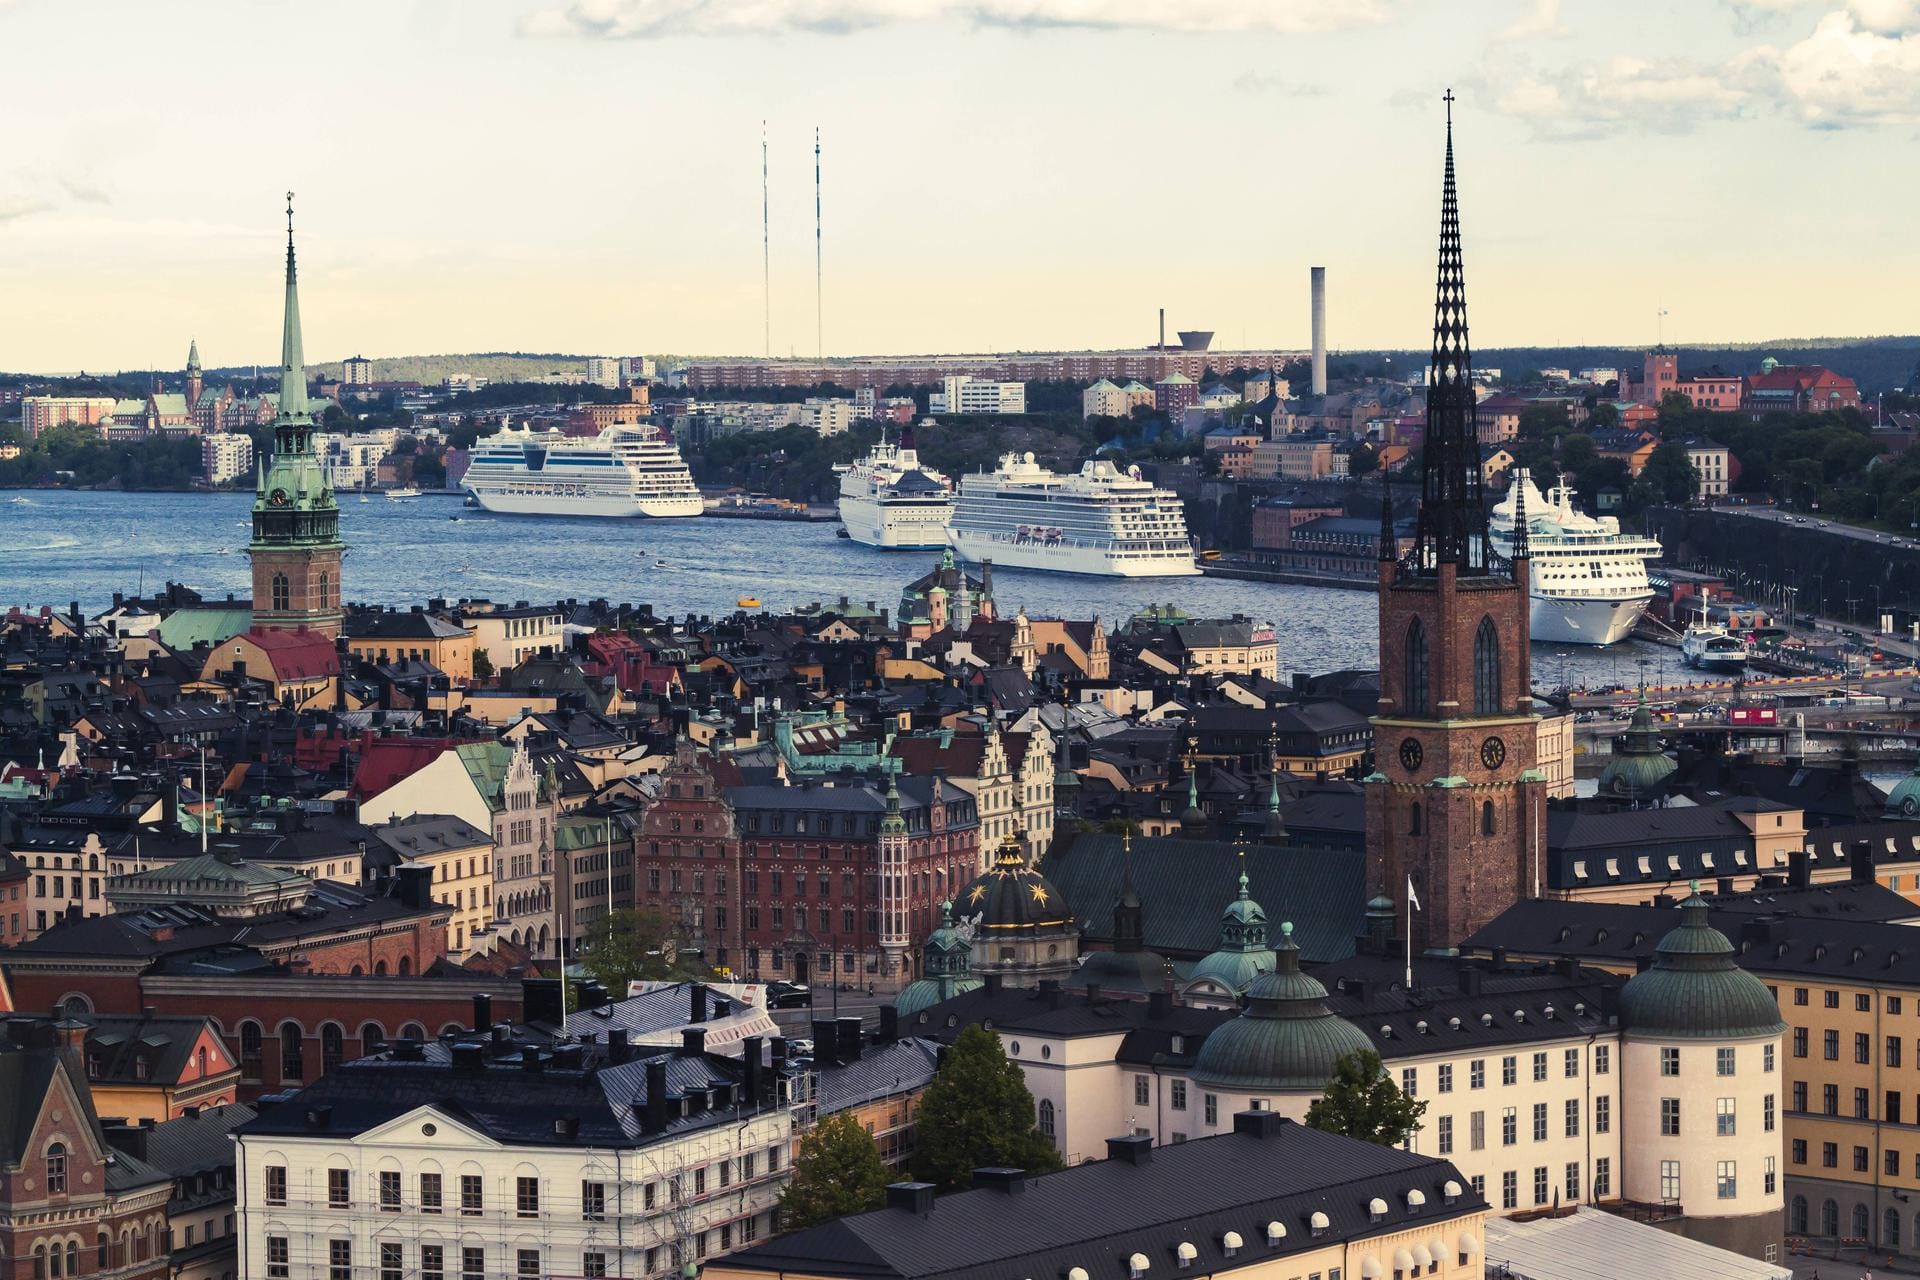 Der Stockholmer Hafen hat auch seinen Reiz. Vor allem allerdings die Anfahrt an den flachen Schären vorbei ist ein Erlebnis.